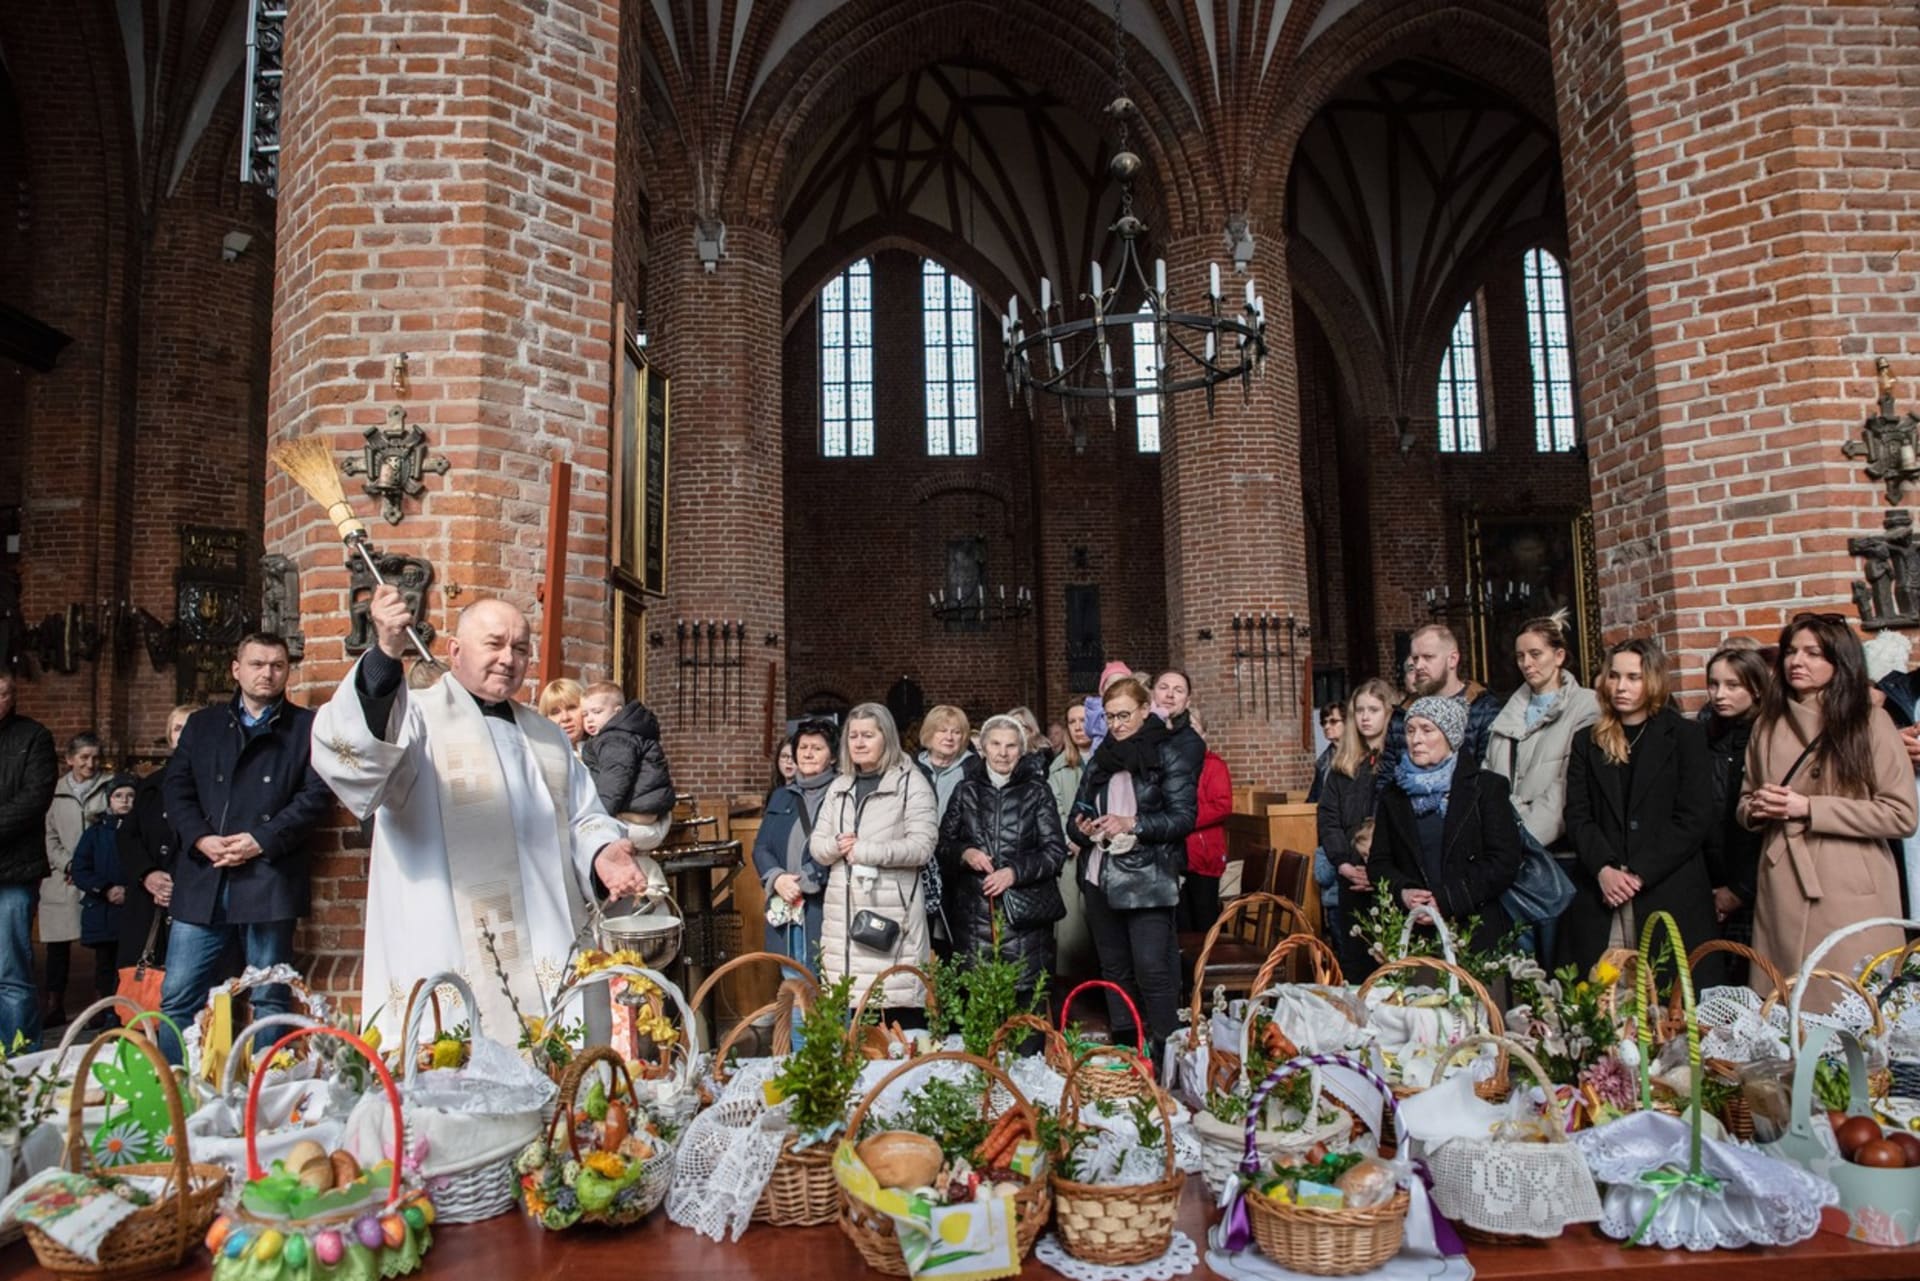 Velikonoce patří v Polsku k nejradostnějším svátkům.